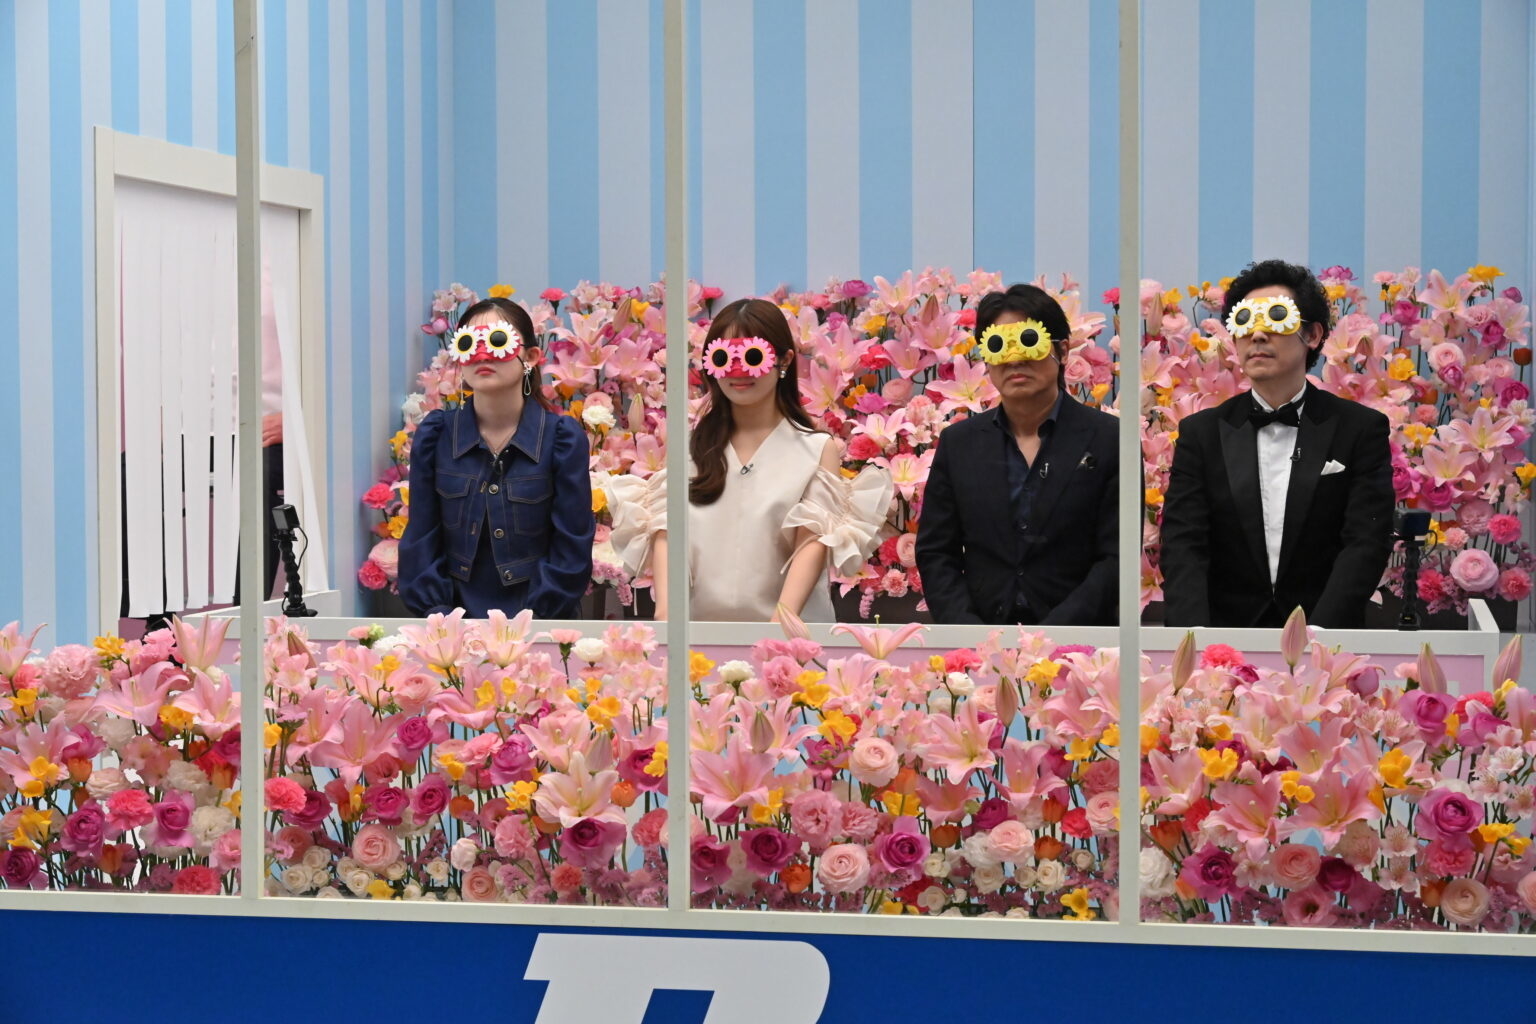 四人が花に囲まれた展示スペースに立って、顔に花の形のメガネをかけている。